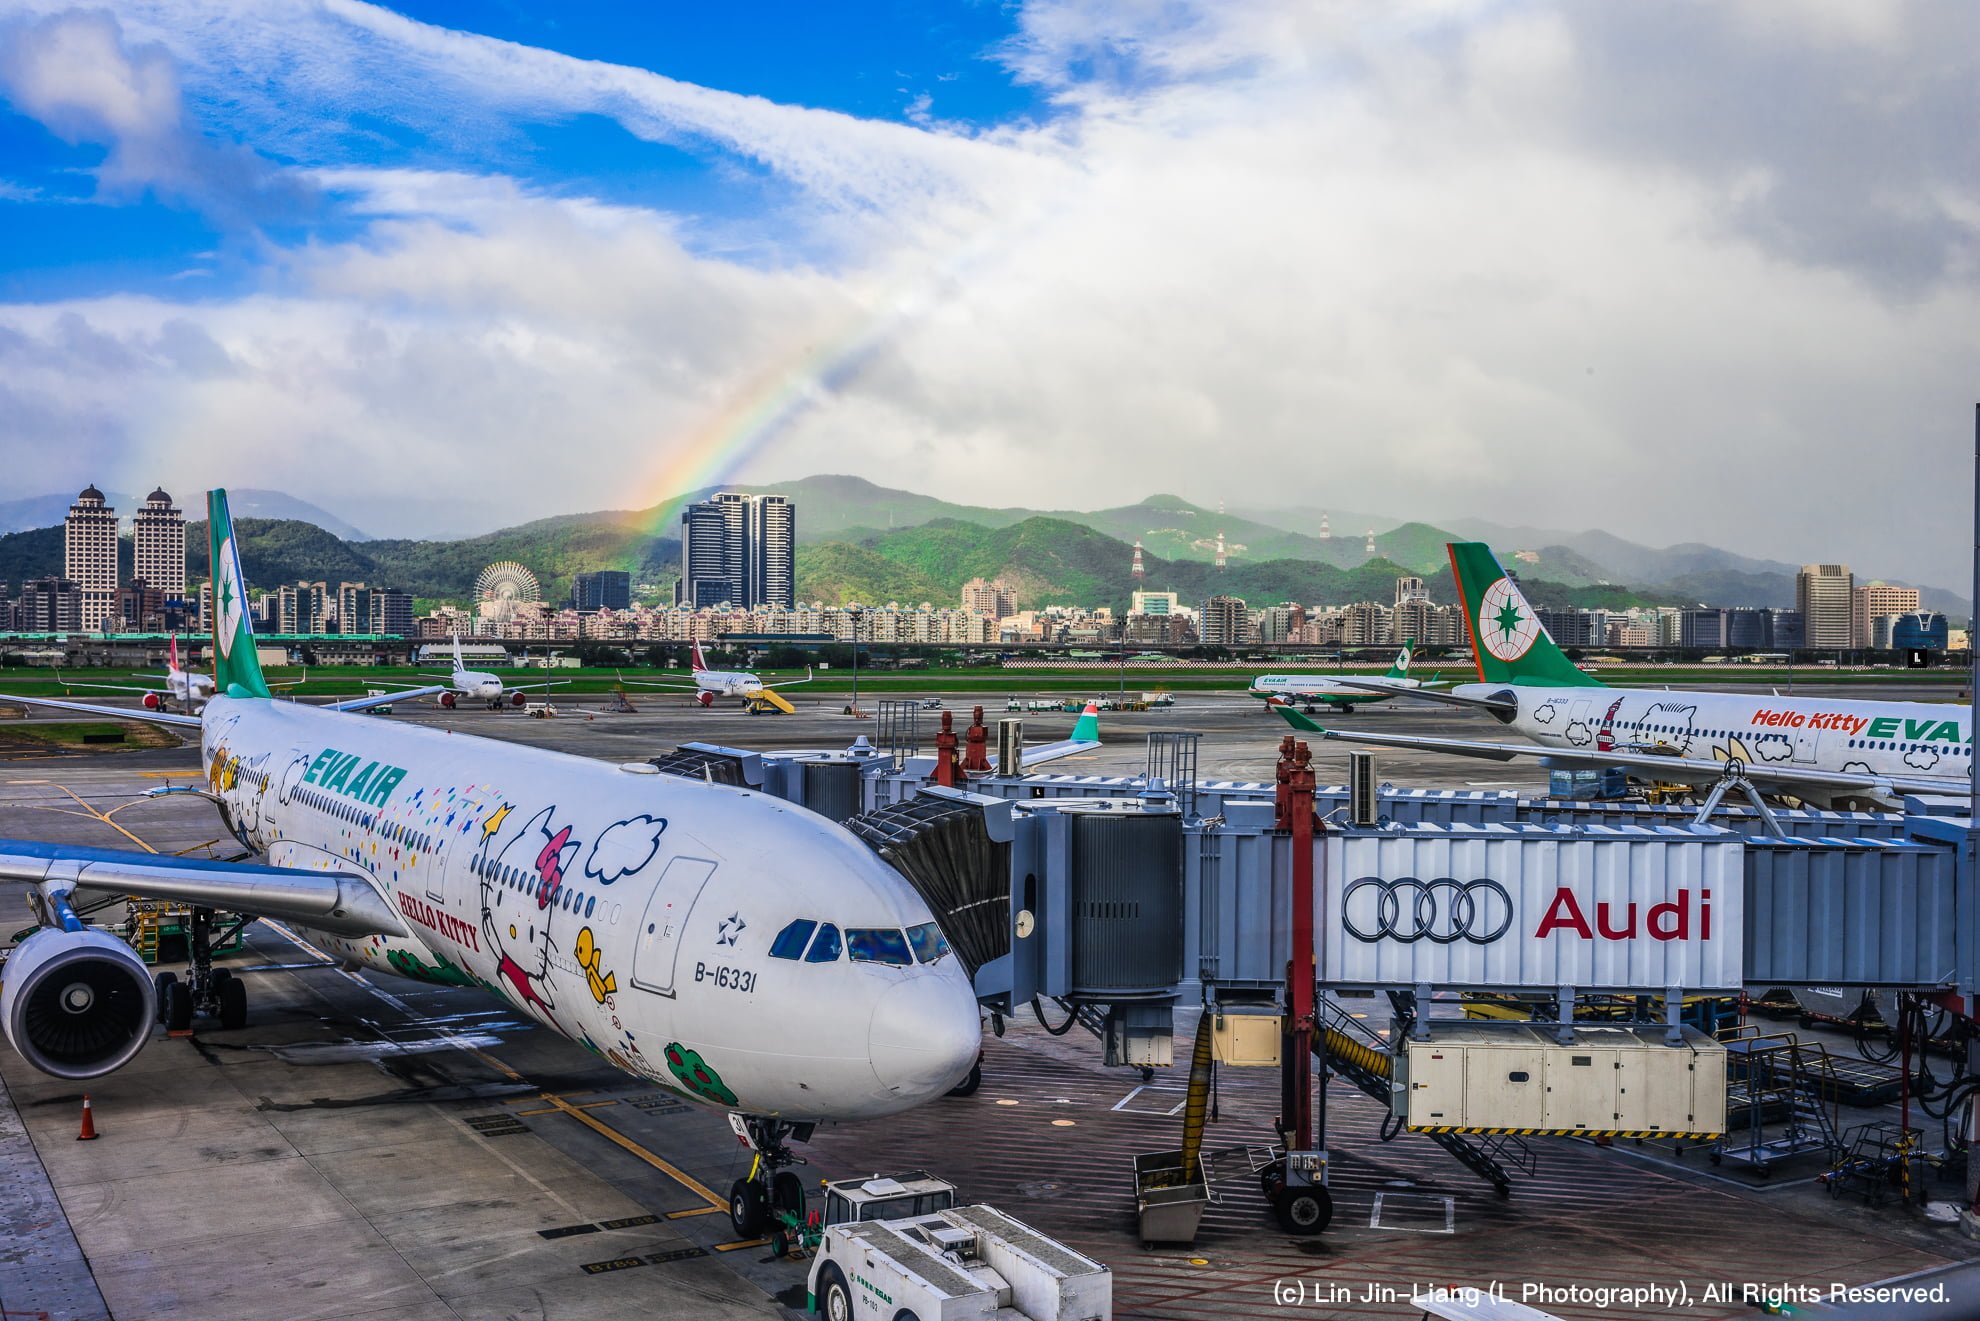 長榮航空飛台北往返馬尼拉航班2月18日前減班飛行 EverGreen Airline Hello Kitty Rainbow Taipei Songshan Airport 長榮航空 彩虹 松山機場